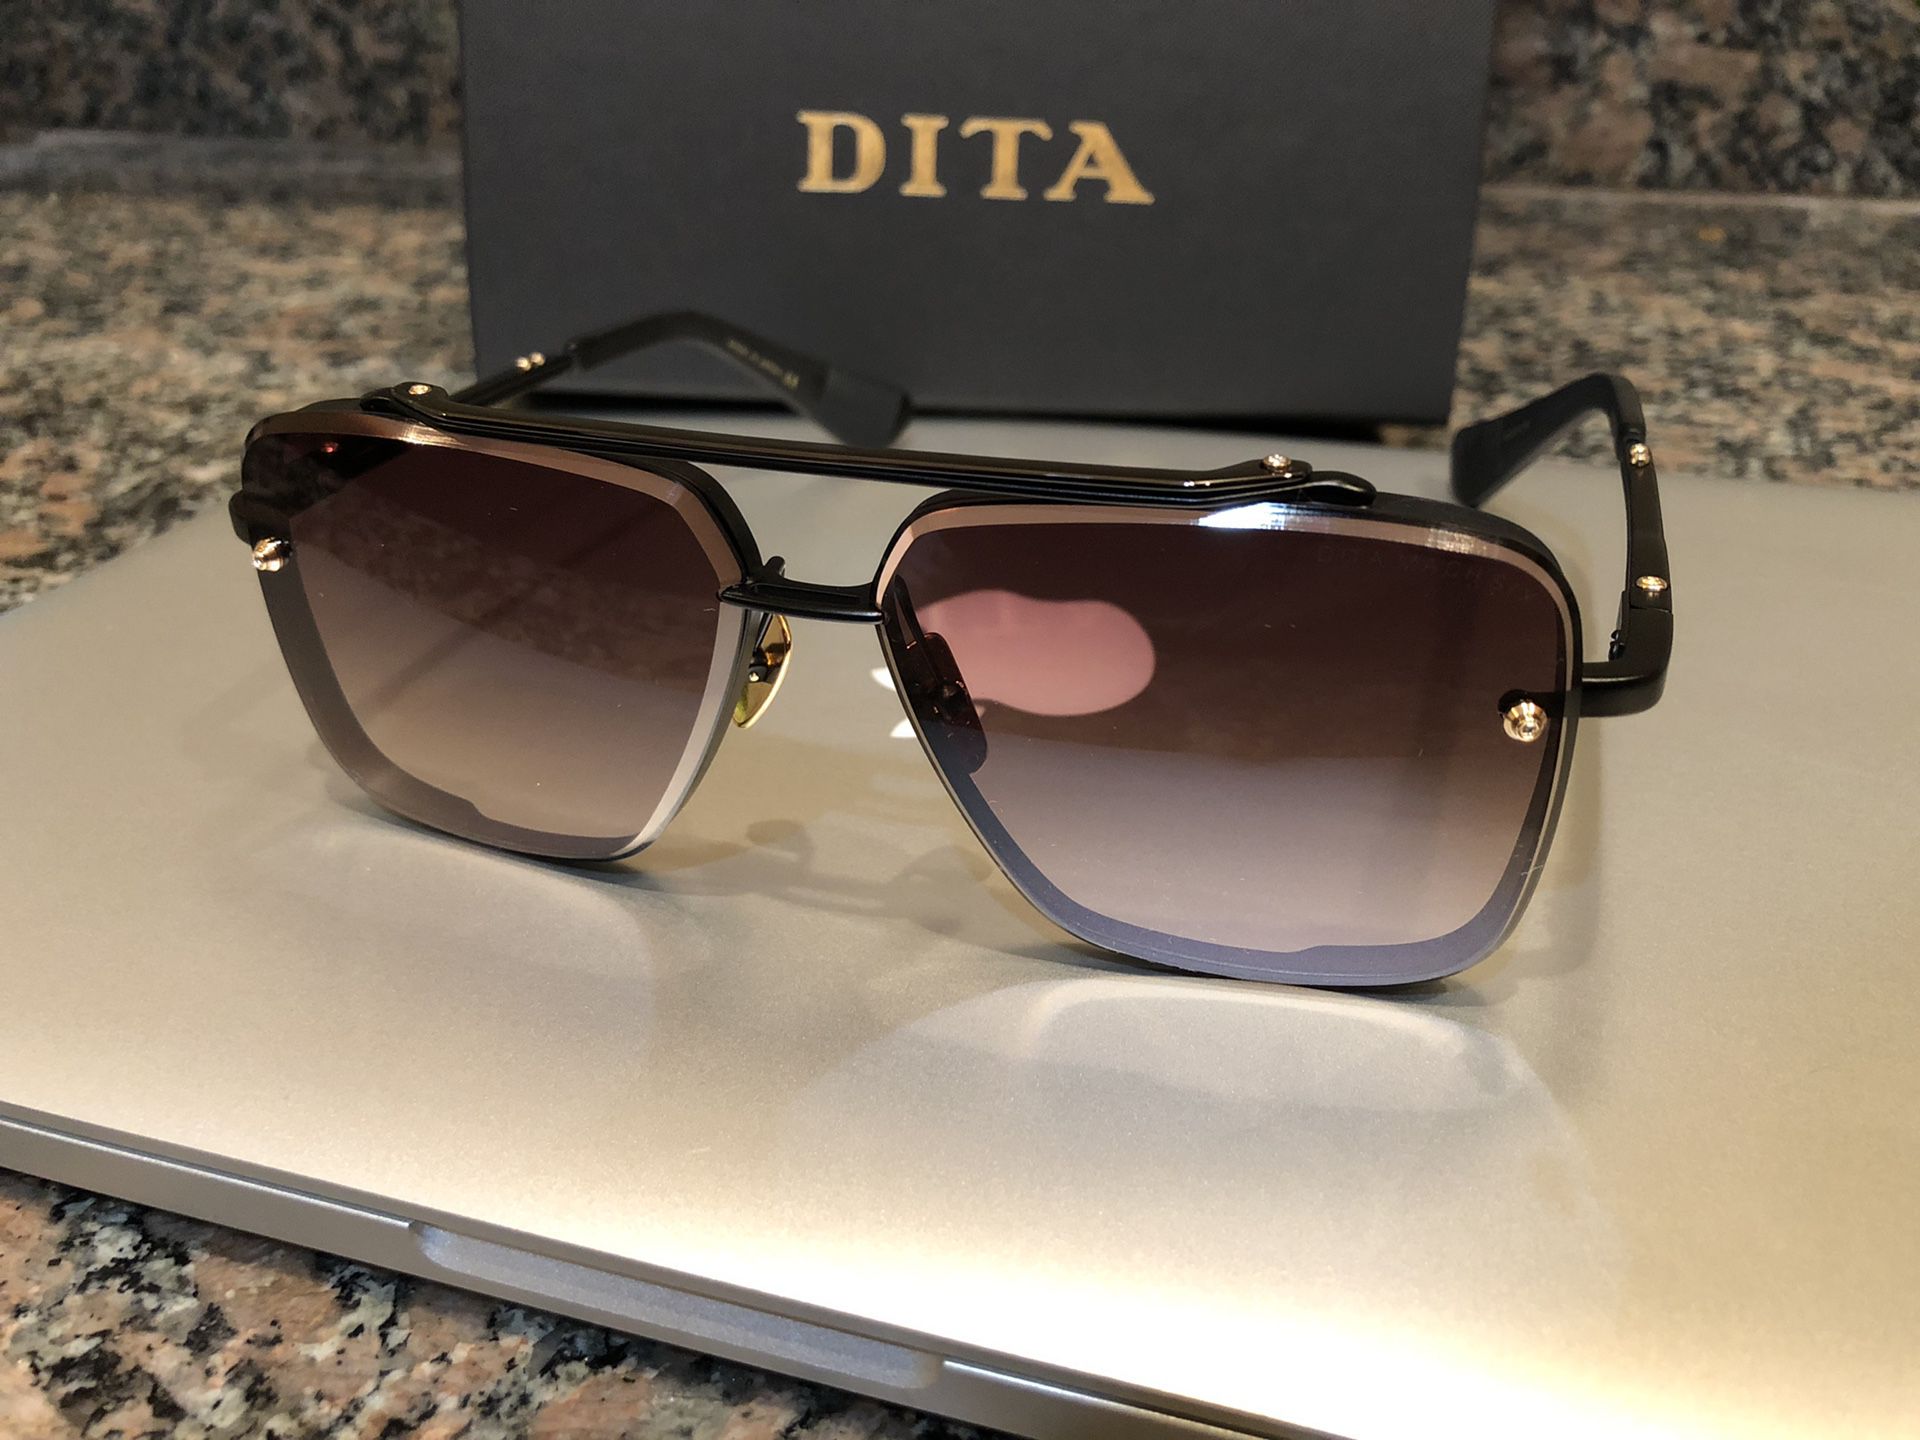 DITA MACH-SIX Matte Black sunglasses